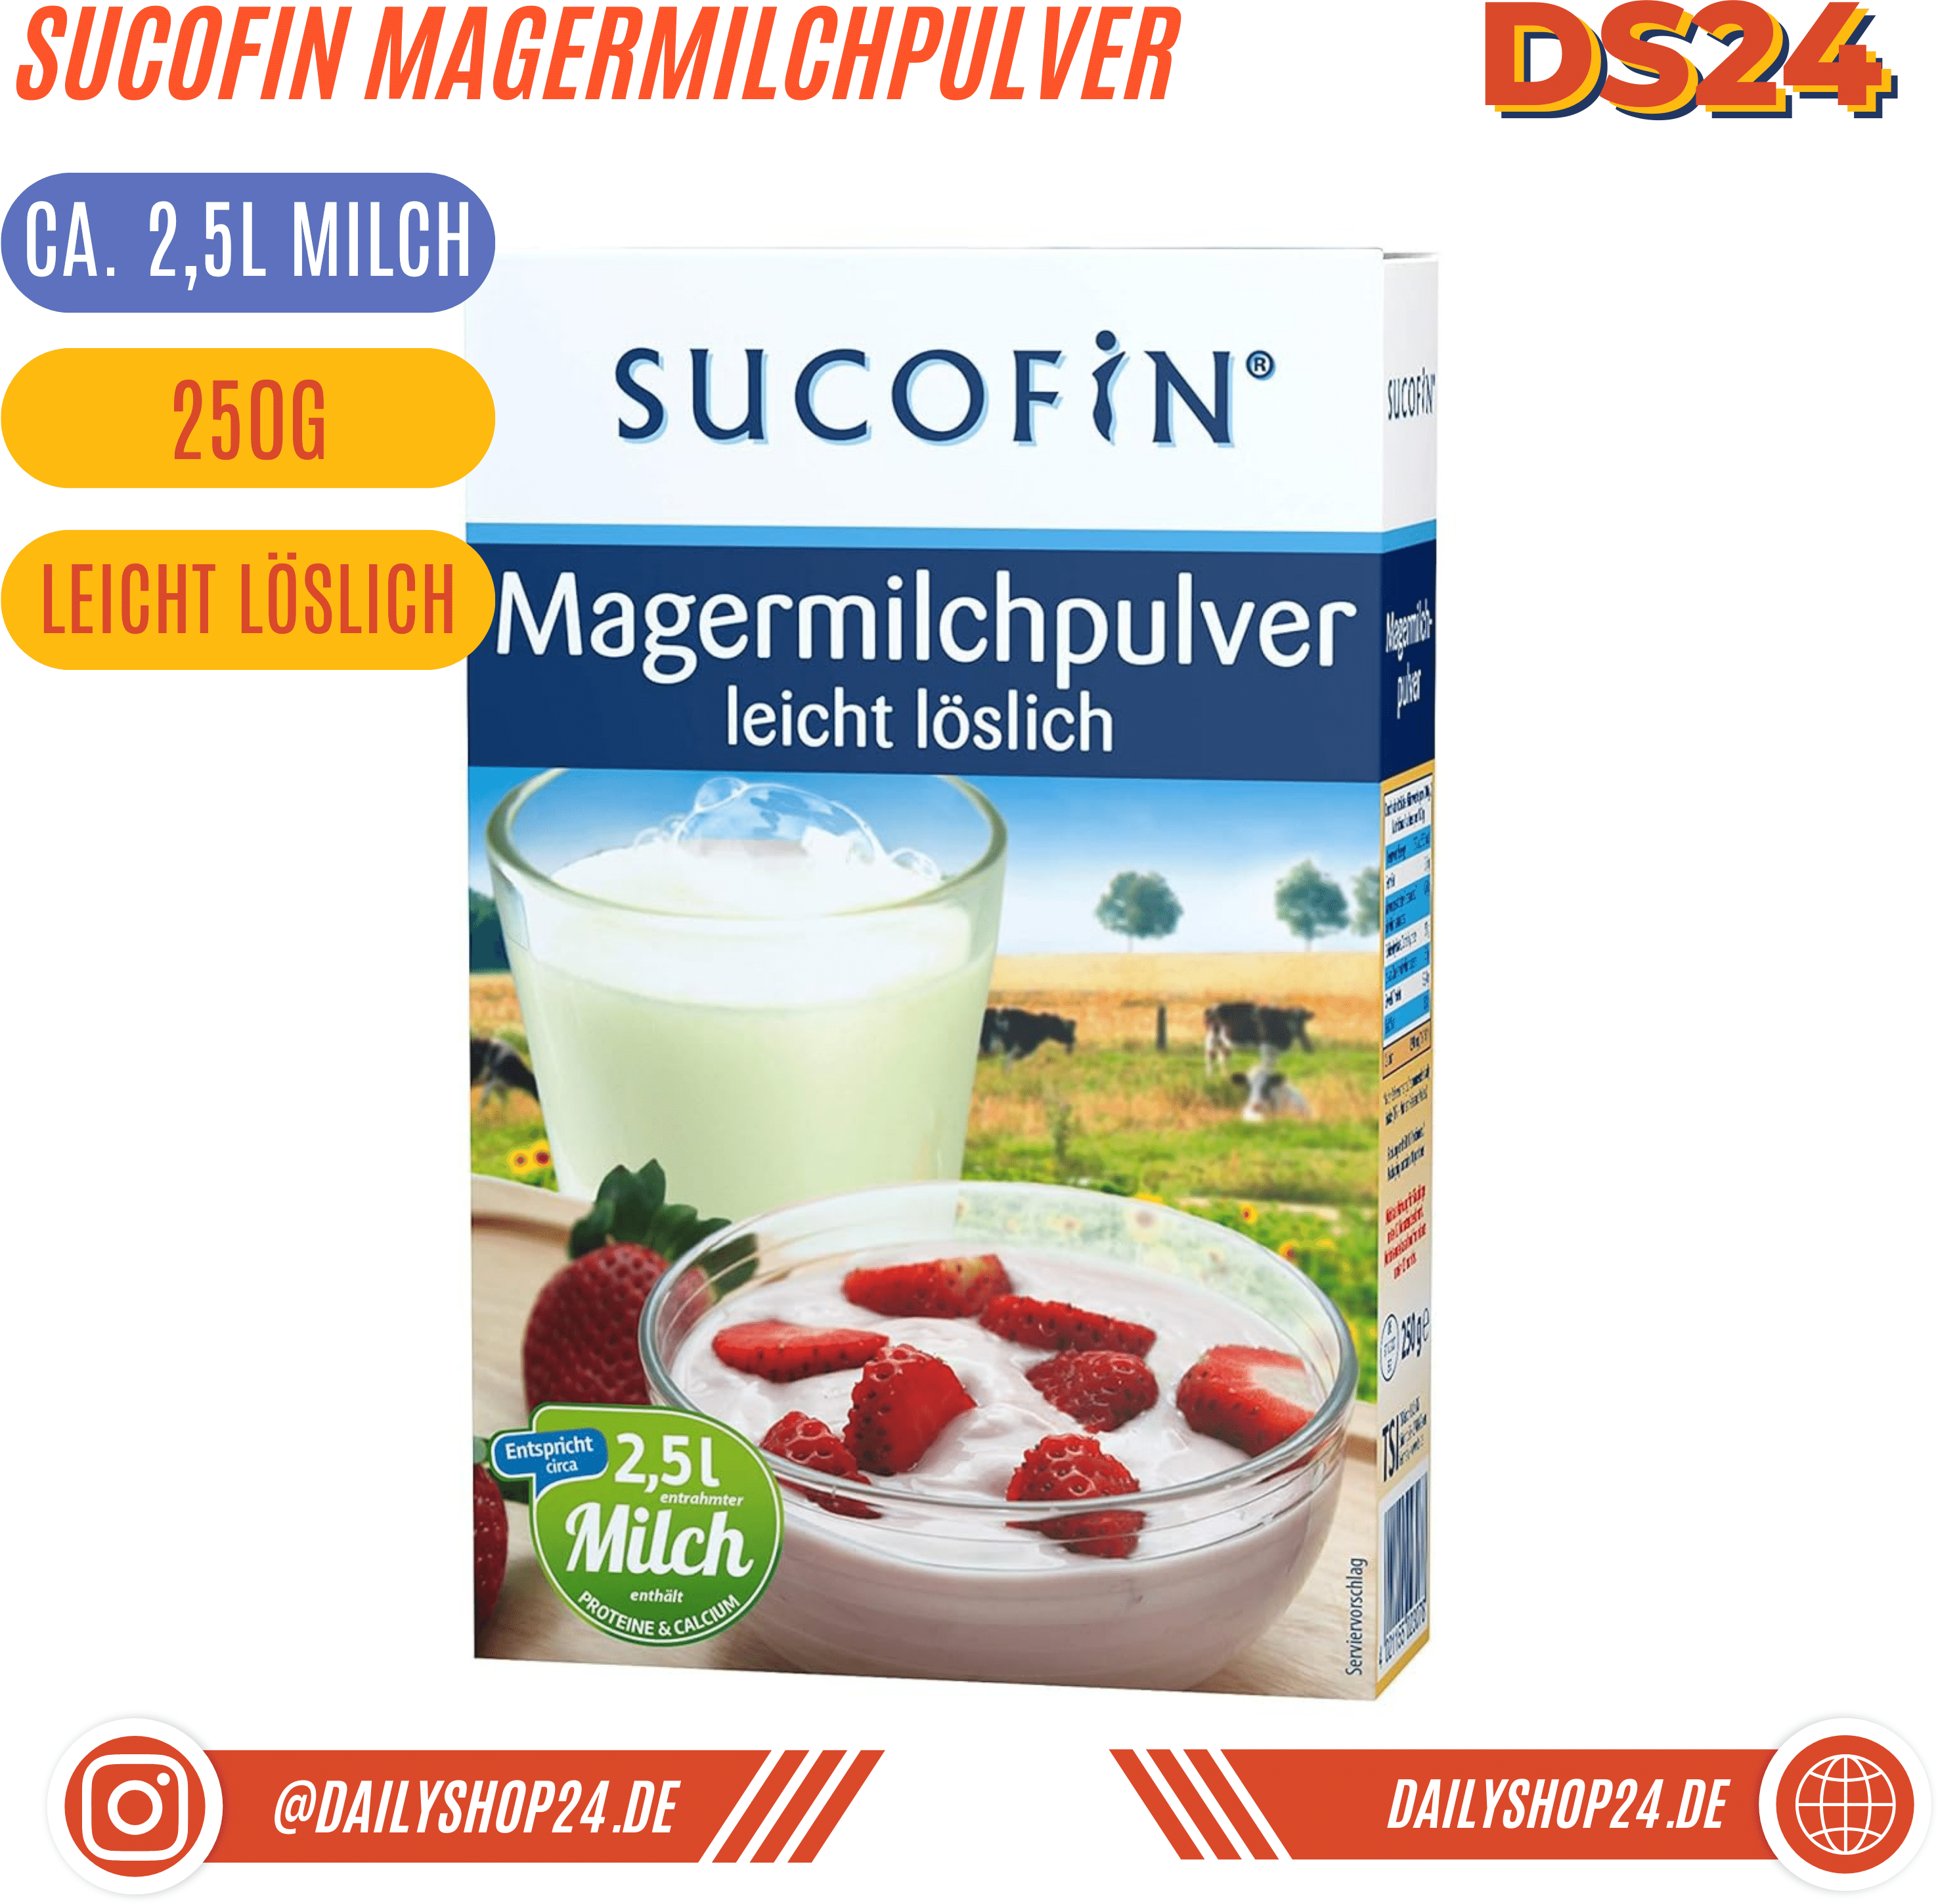 SUCOFIN Magermilchpulver - 9